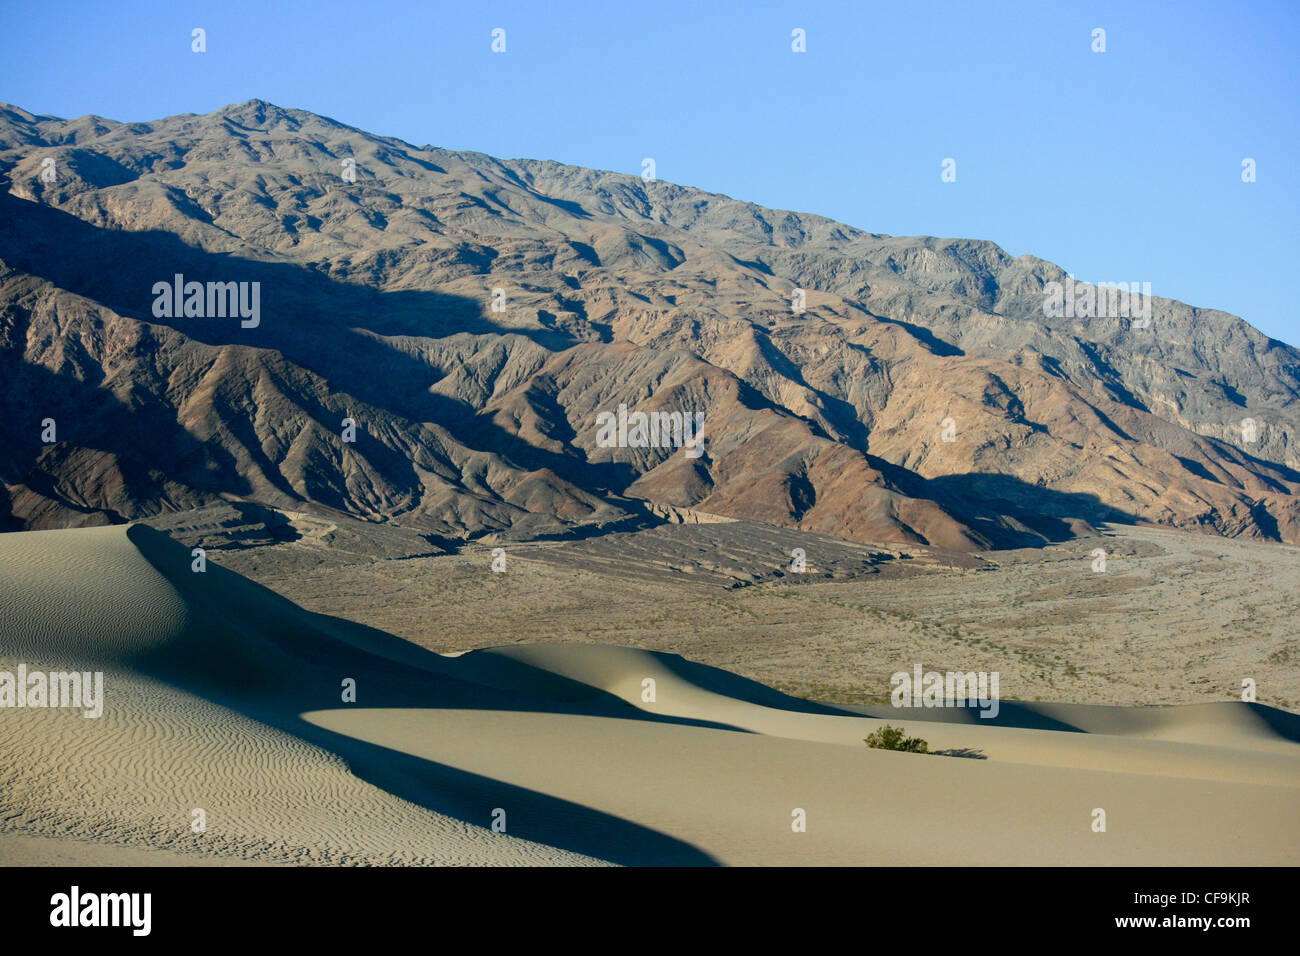 Le mesquite dunes et montagnes, la vallée de la mort, Nevada Banque D'Images